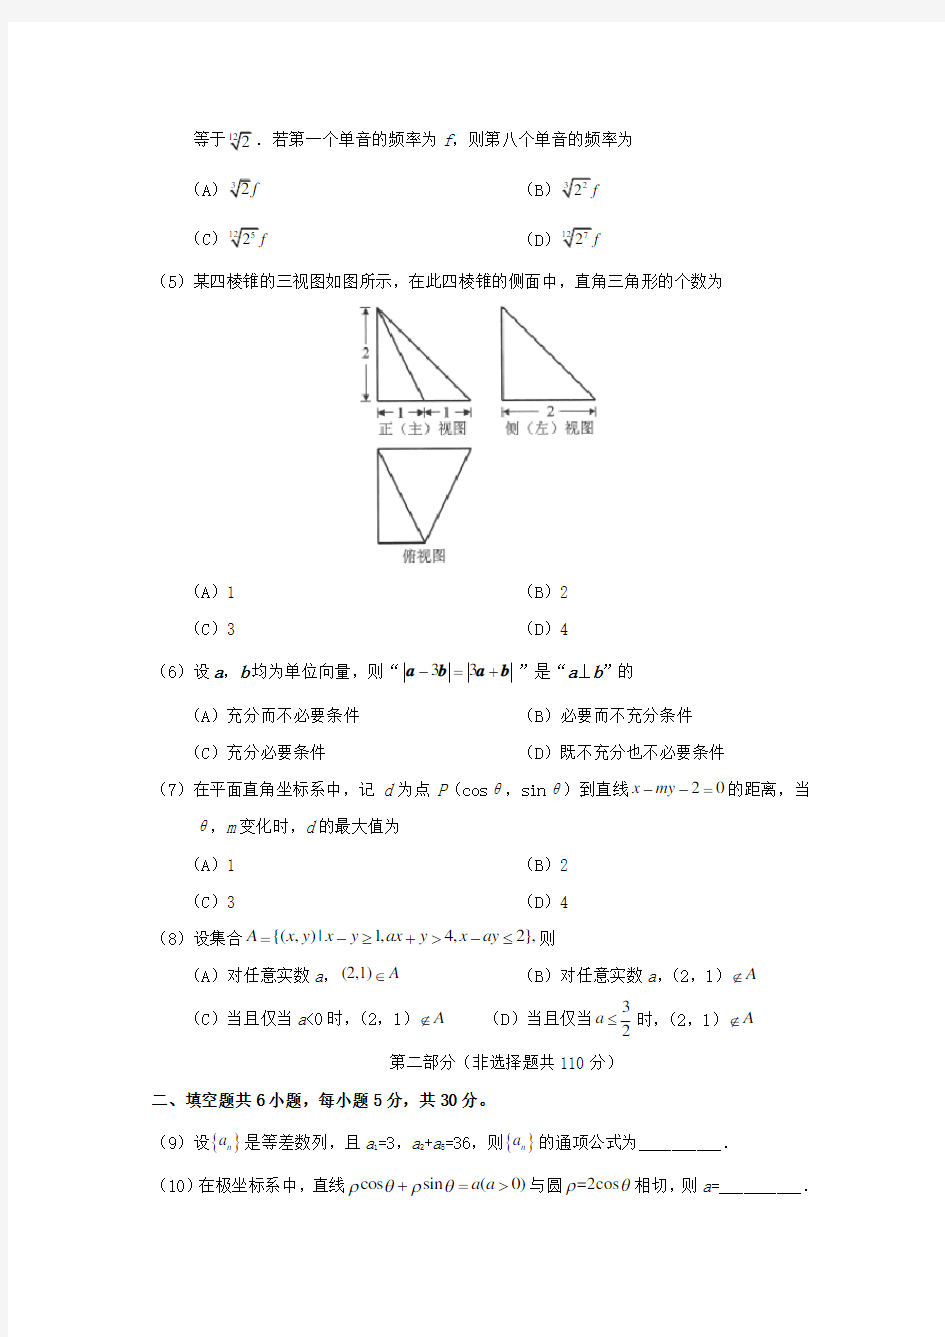 2018年北京高考理科数学真题及答案